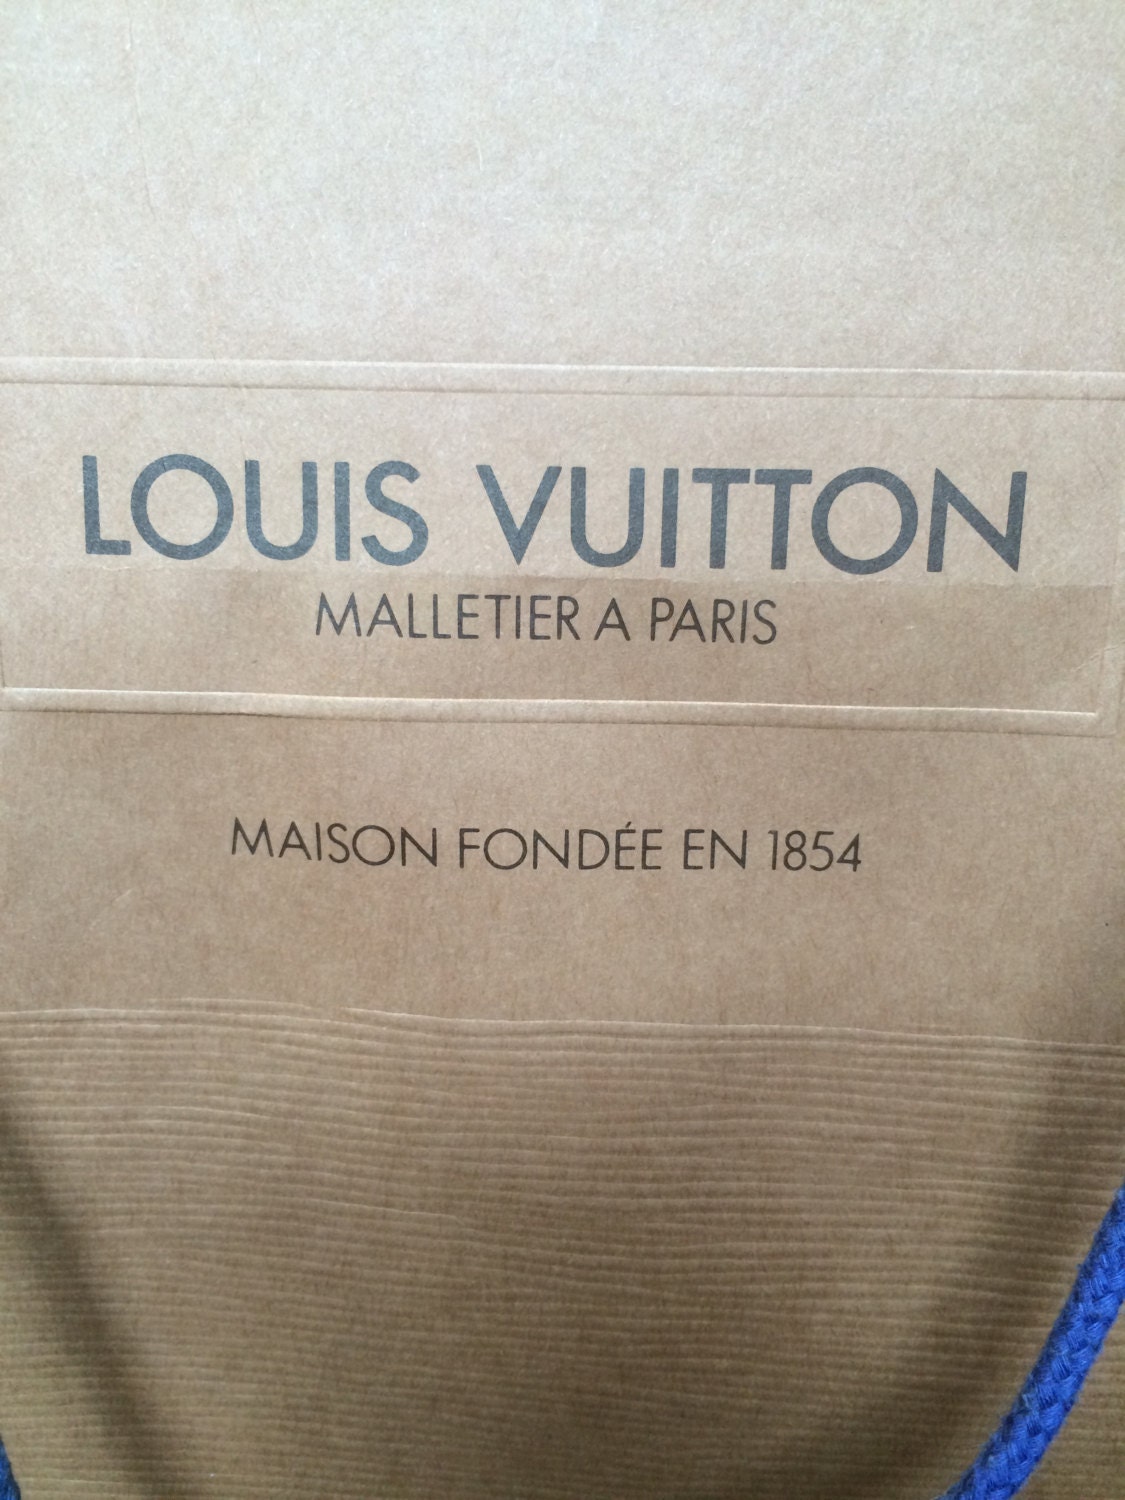 Louis Vuitton Malletiera Paris Maison Fondee En 18549 West